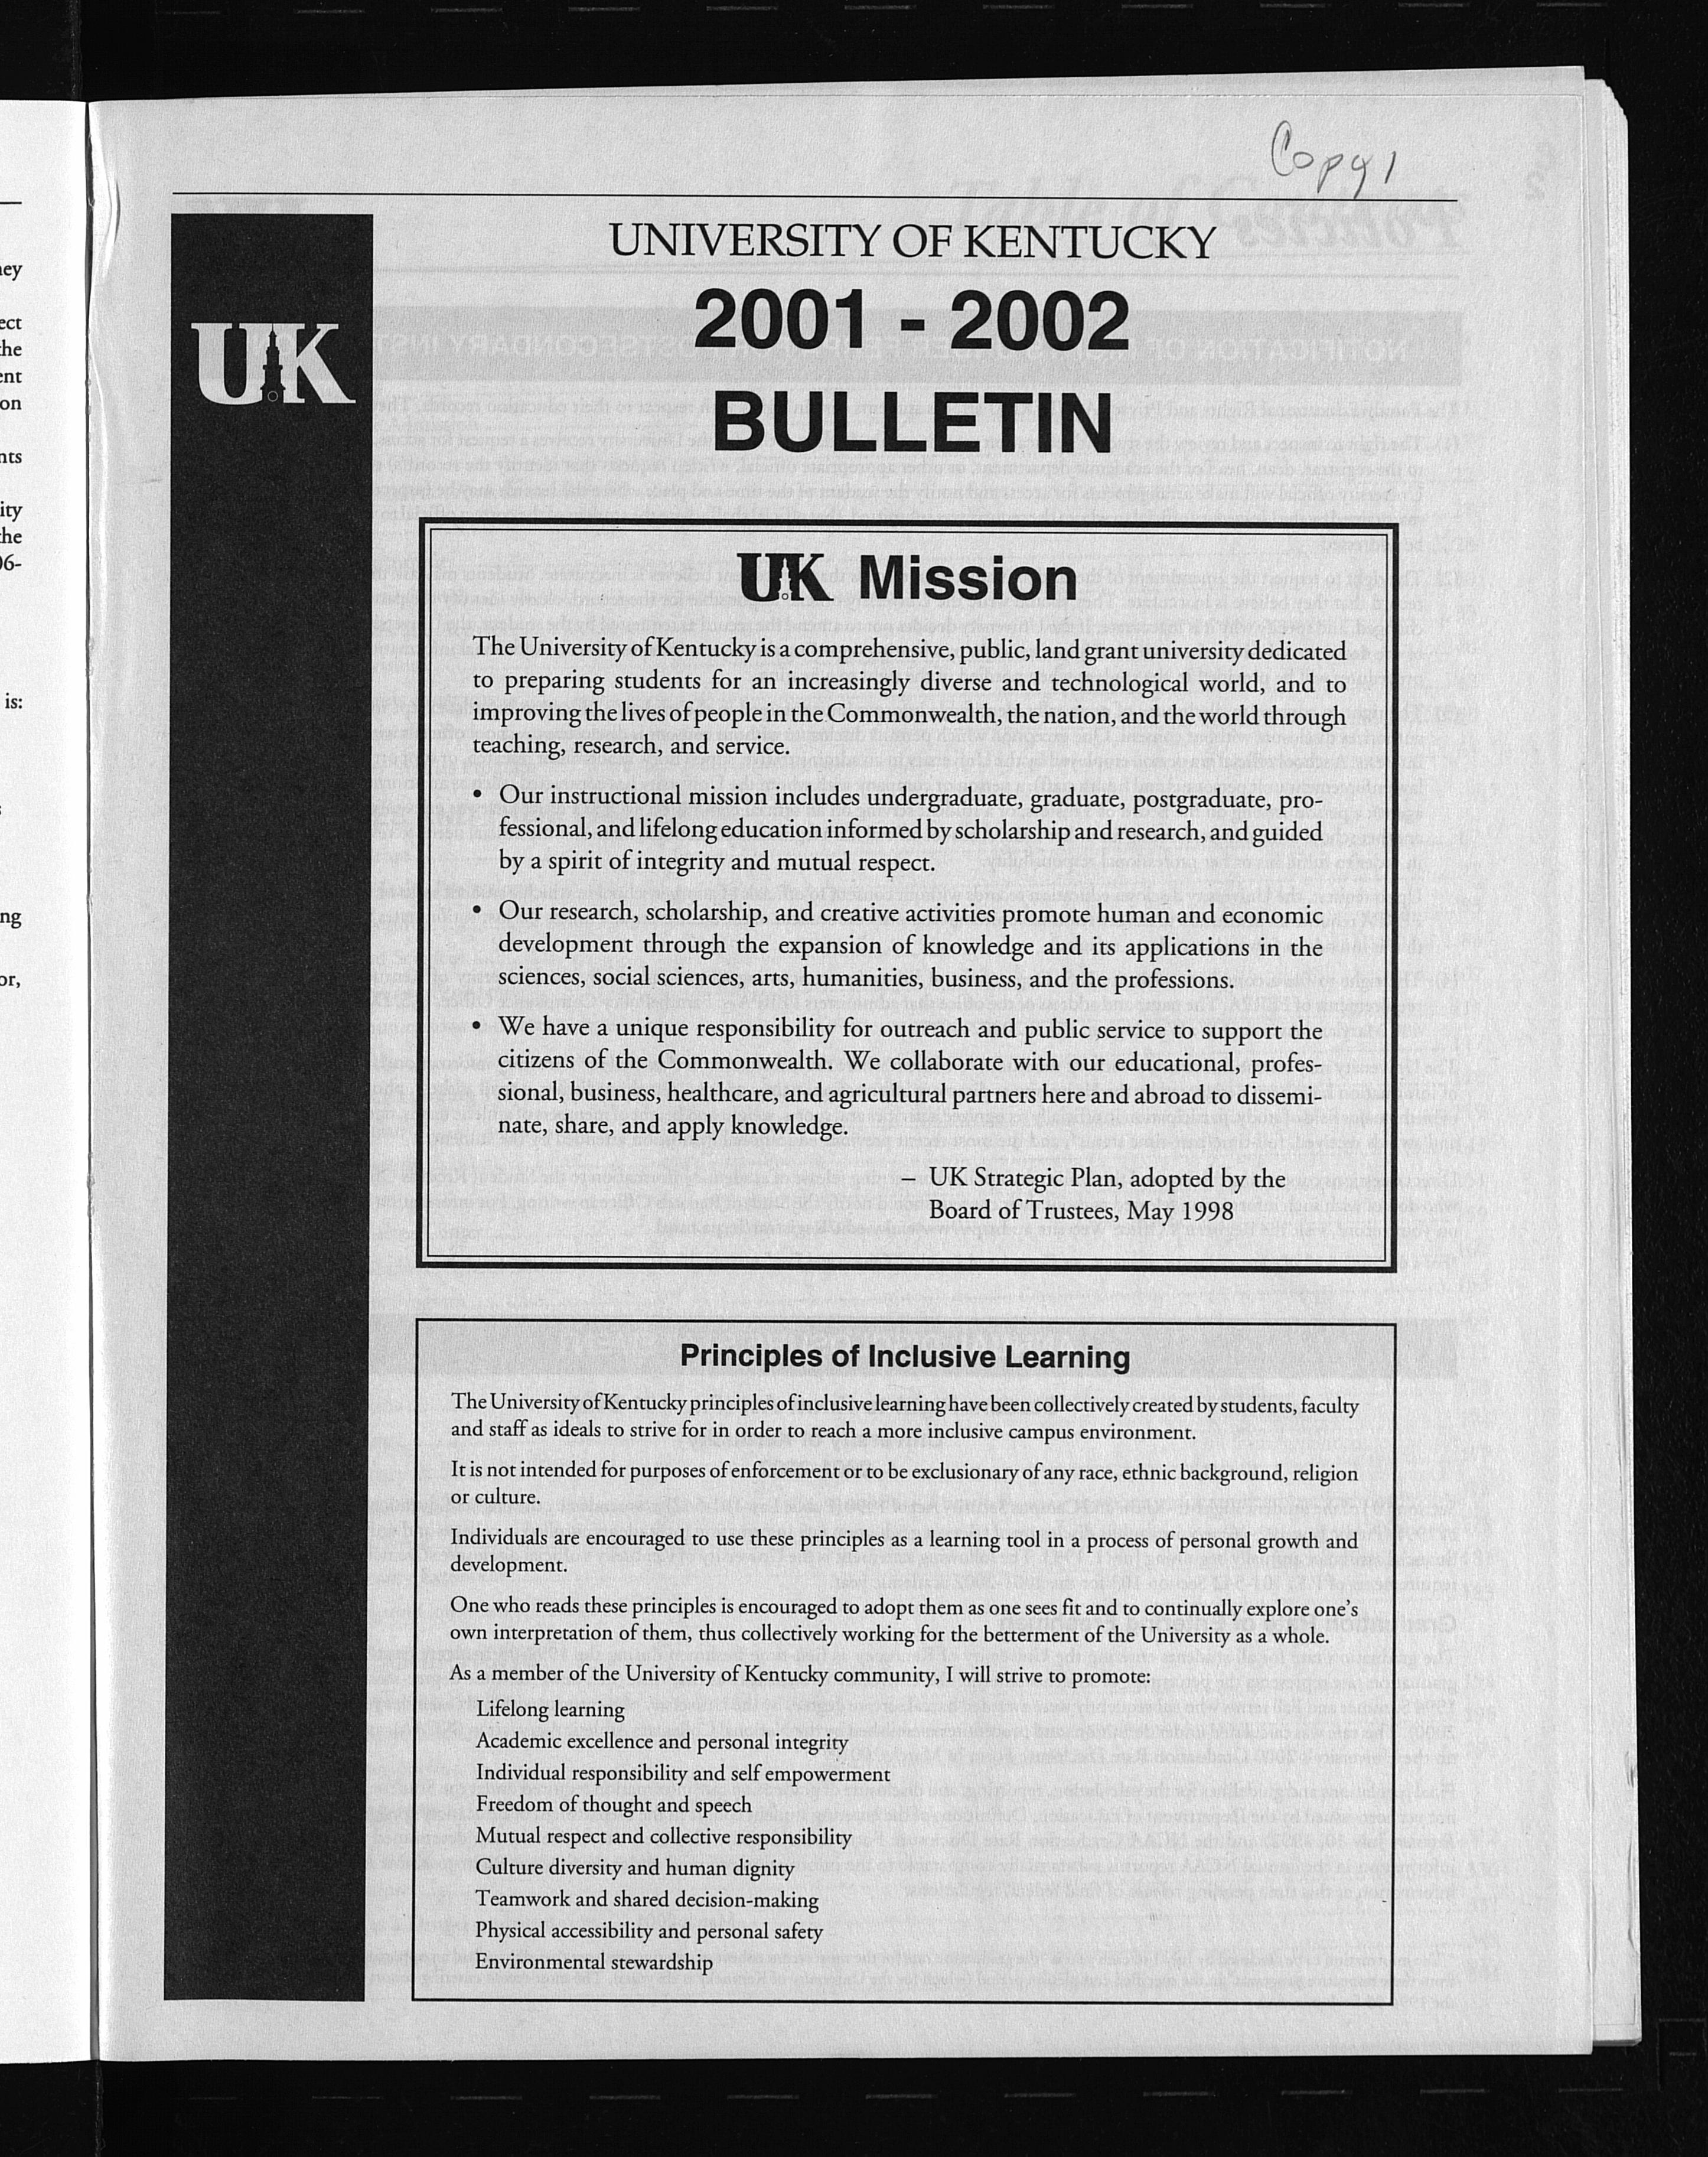 University of Kentucky Series- University Bulletin, Volume 93, Issue 1, 2001-2002